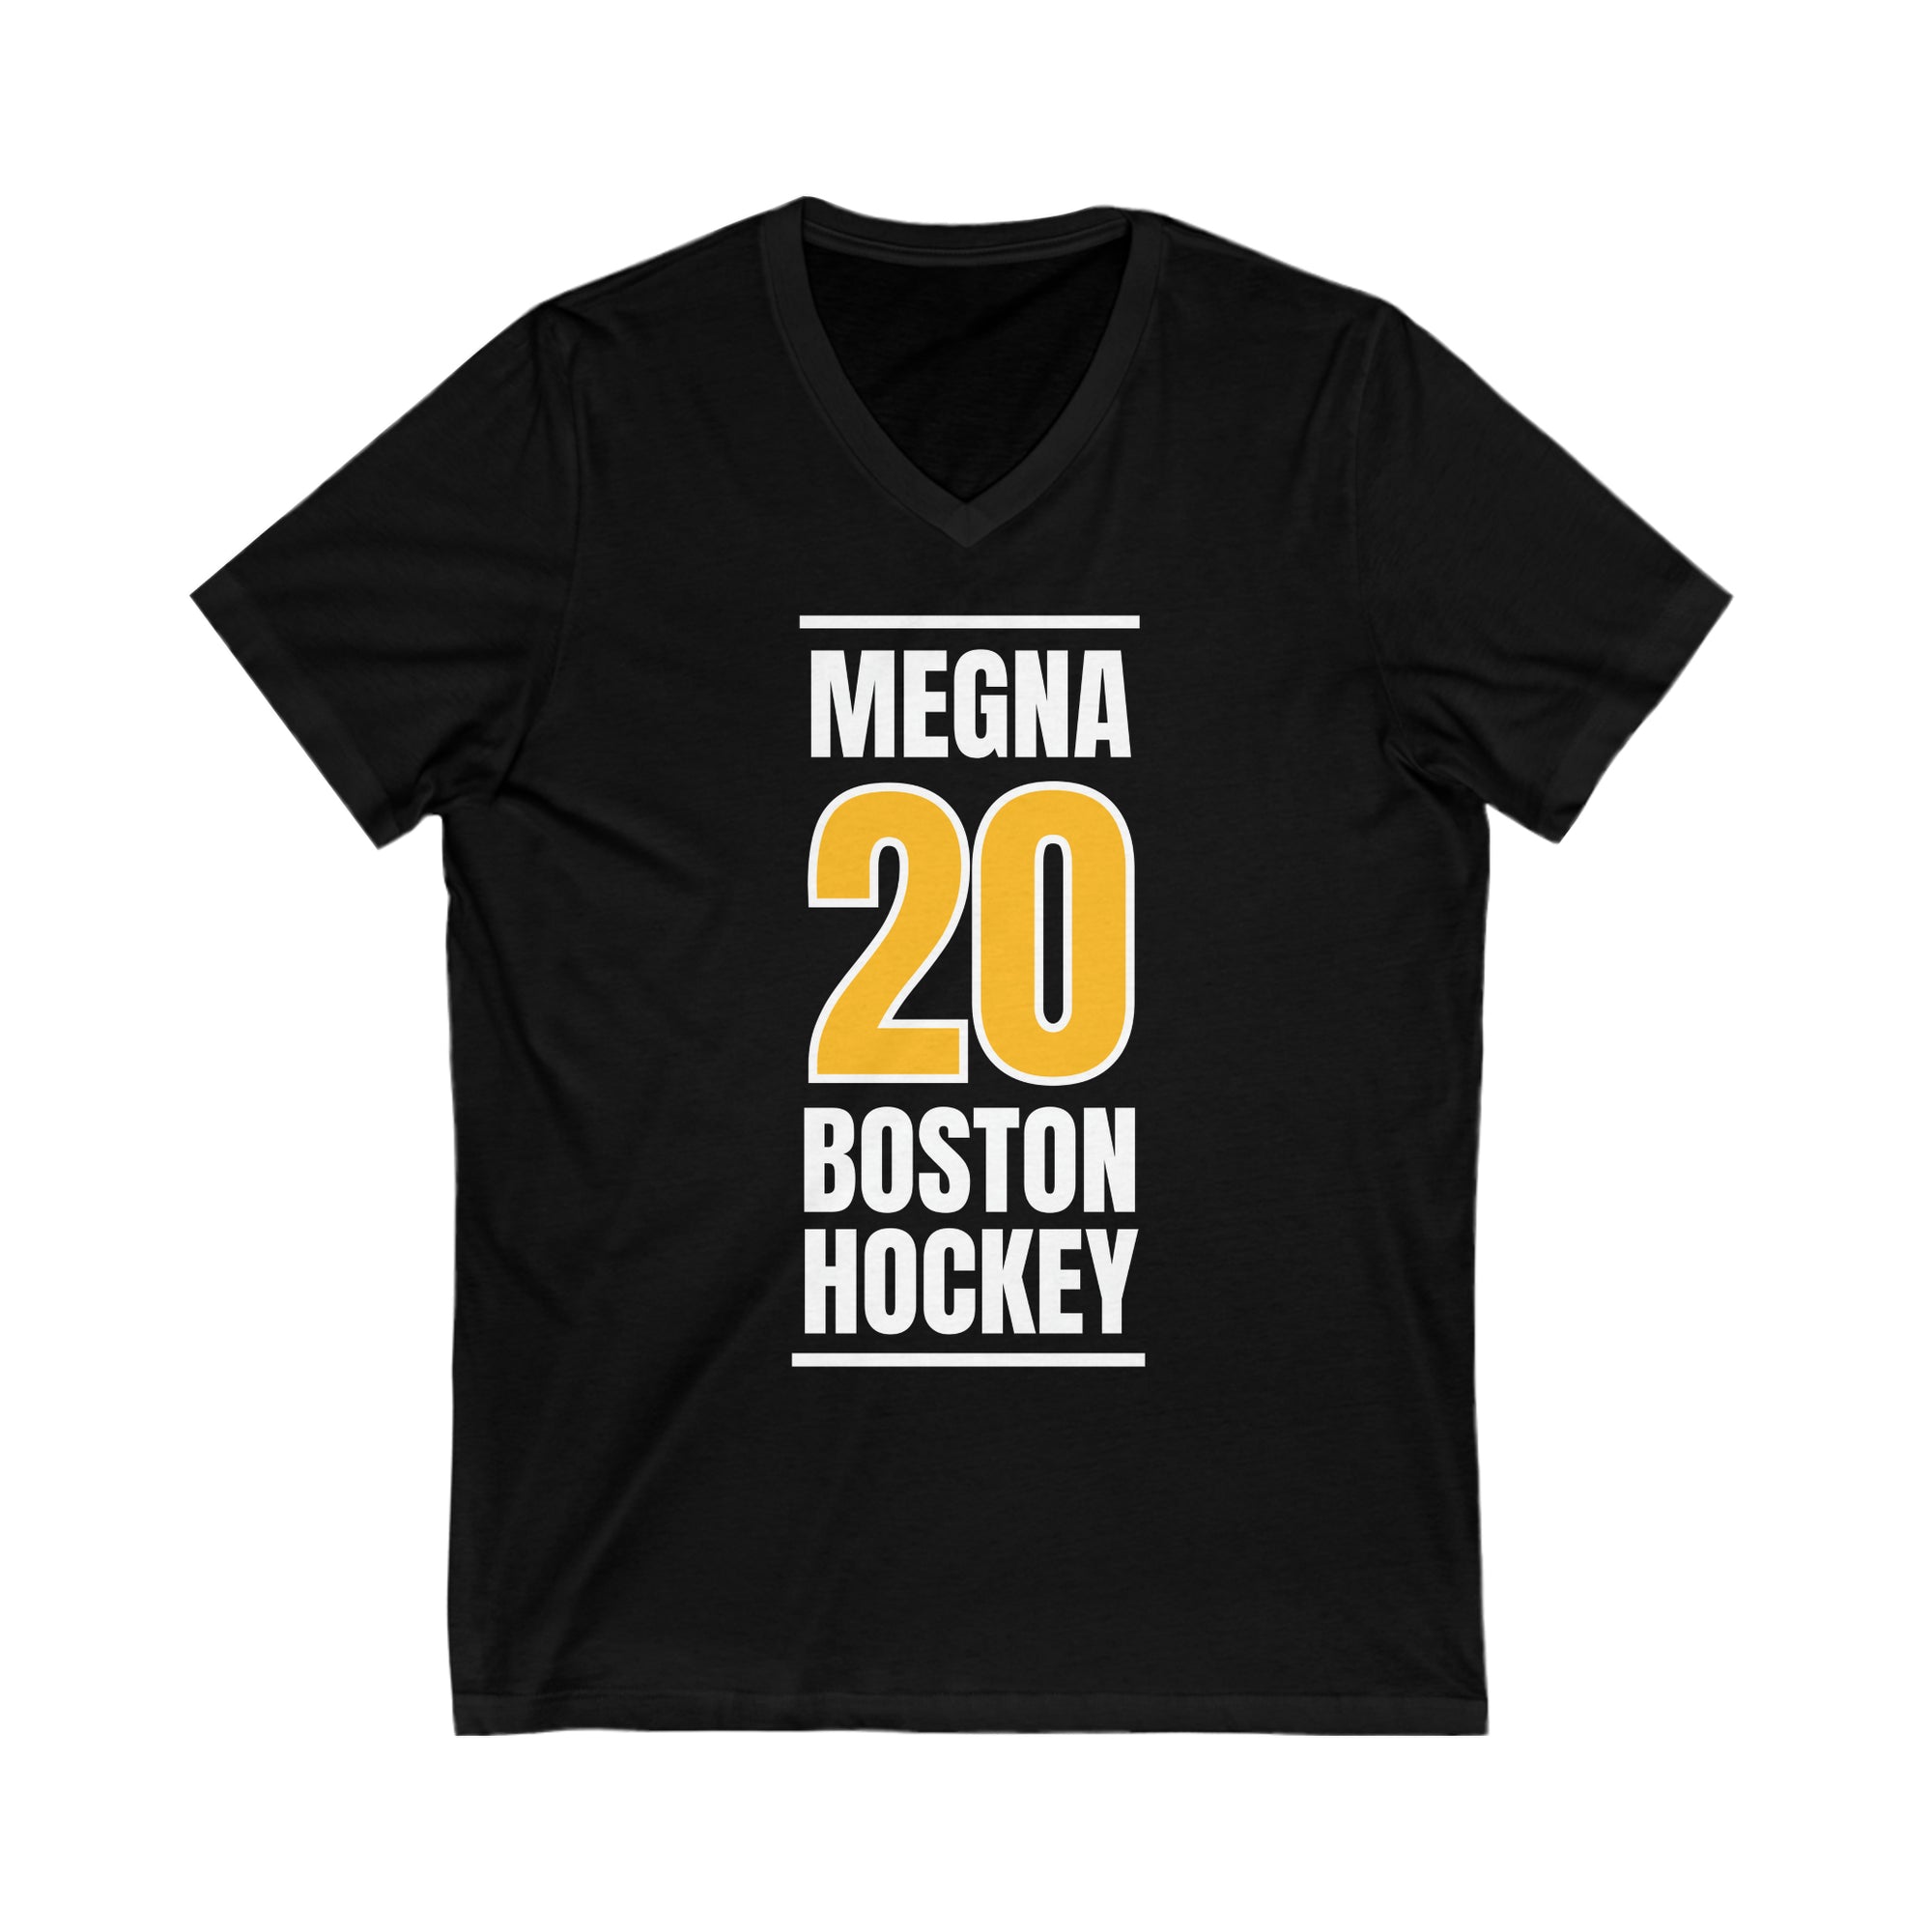 Megna 20 Boston Hockey Gold Vertical Design Unisex V-Neck Tee